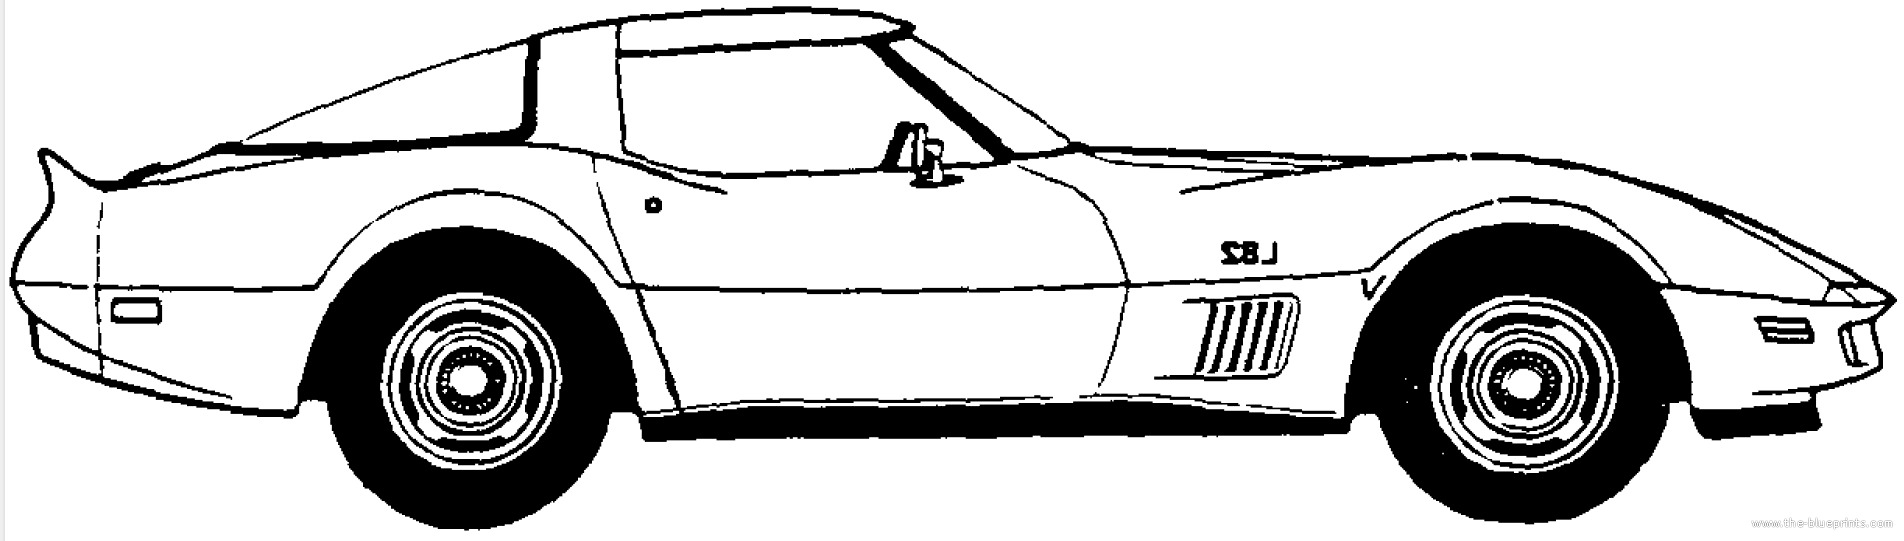 Chevrolet corvette z06 clipart